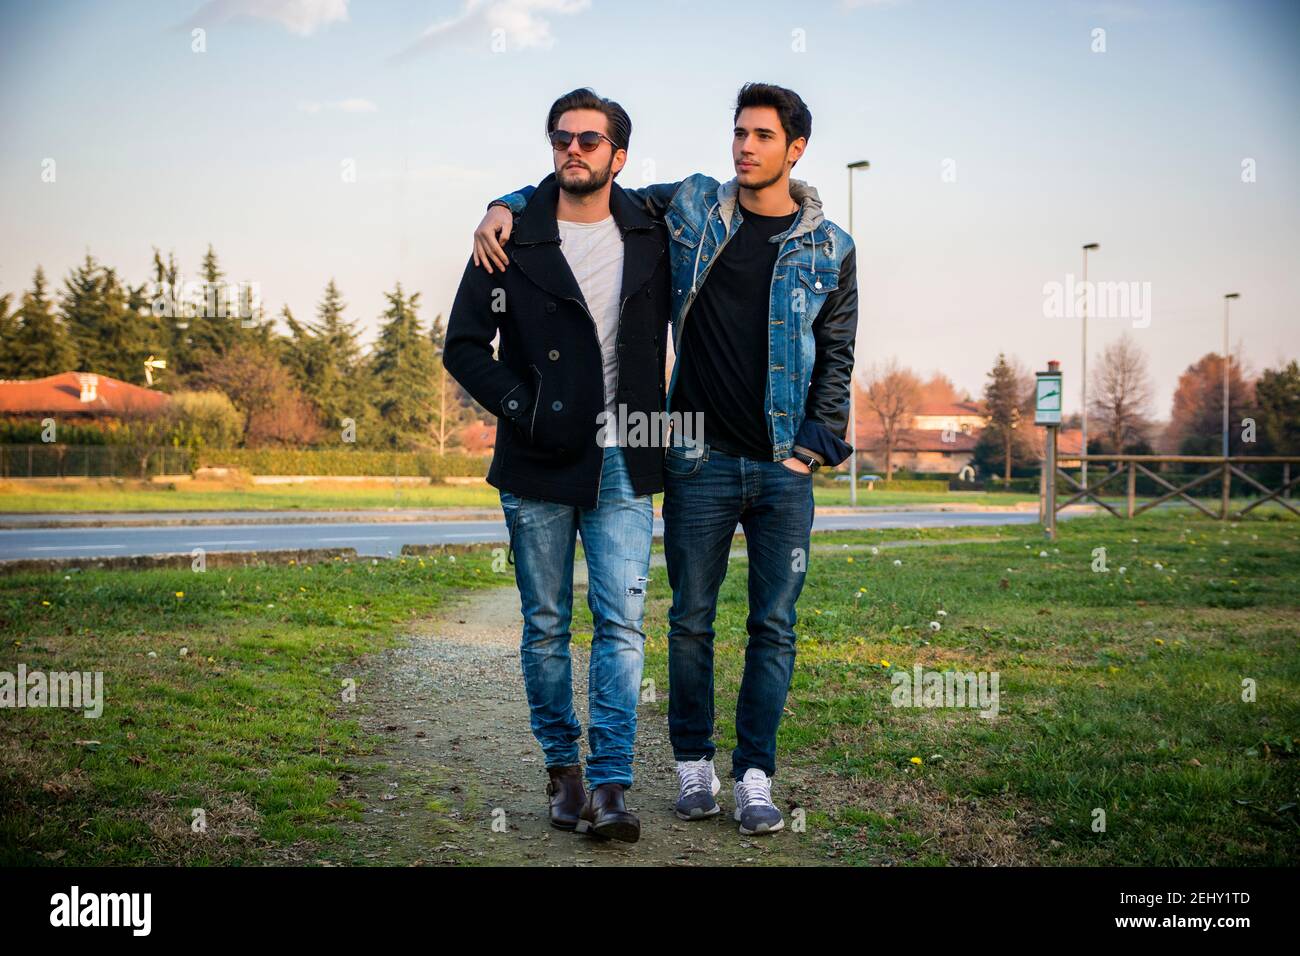 Zwei schöne junge Männer, Freunde, in einem park Stockfoto